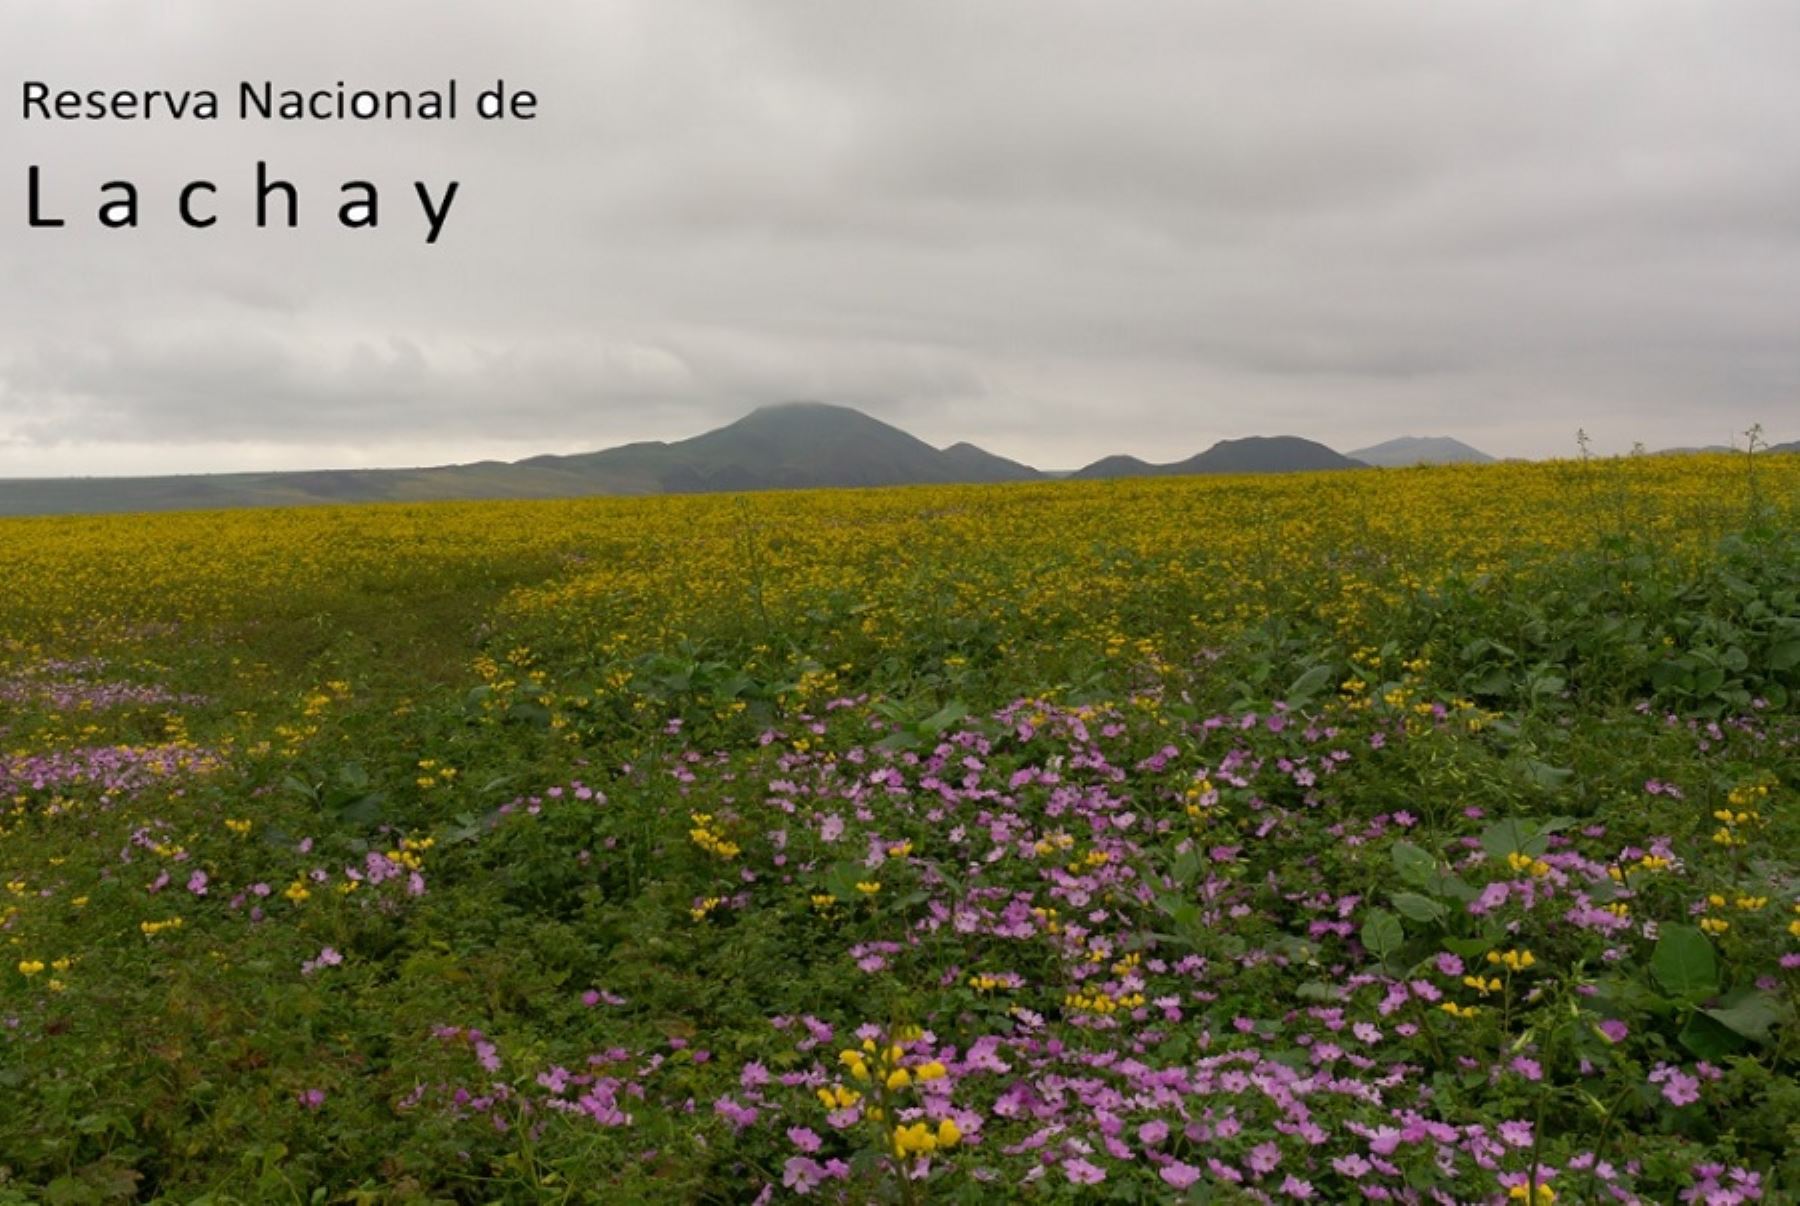 Considerada un pequeño paraíso ubicado a tan solo 105 kilómetros al norte de la ciudad de Lima, en el distrito de Chancay, provincia de Huaura, la Reserva Nacional de Lachay celebra 45 años como área natural protegida que preserva la singular biodiversidad de las lomas costeras.